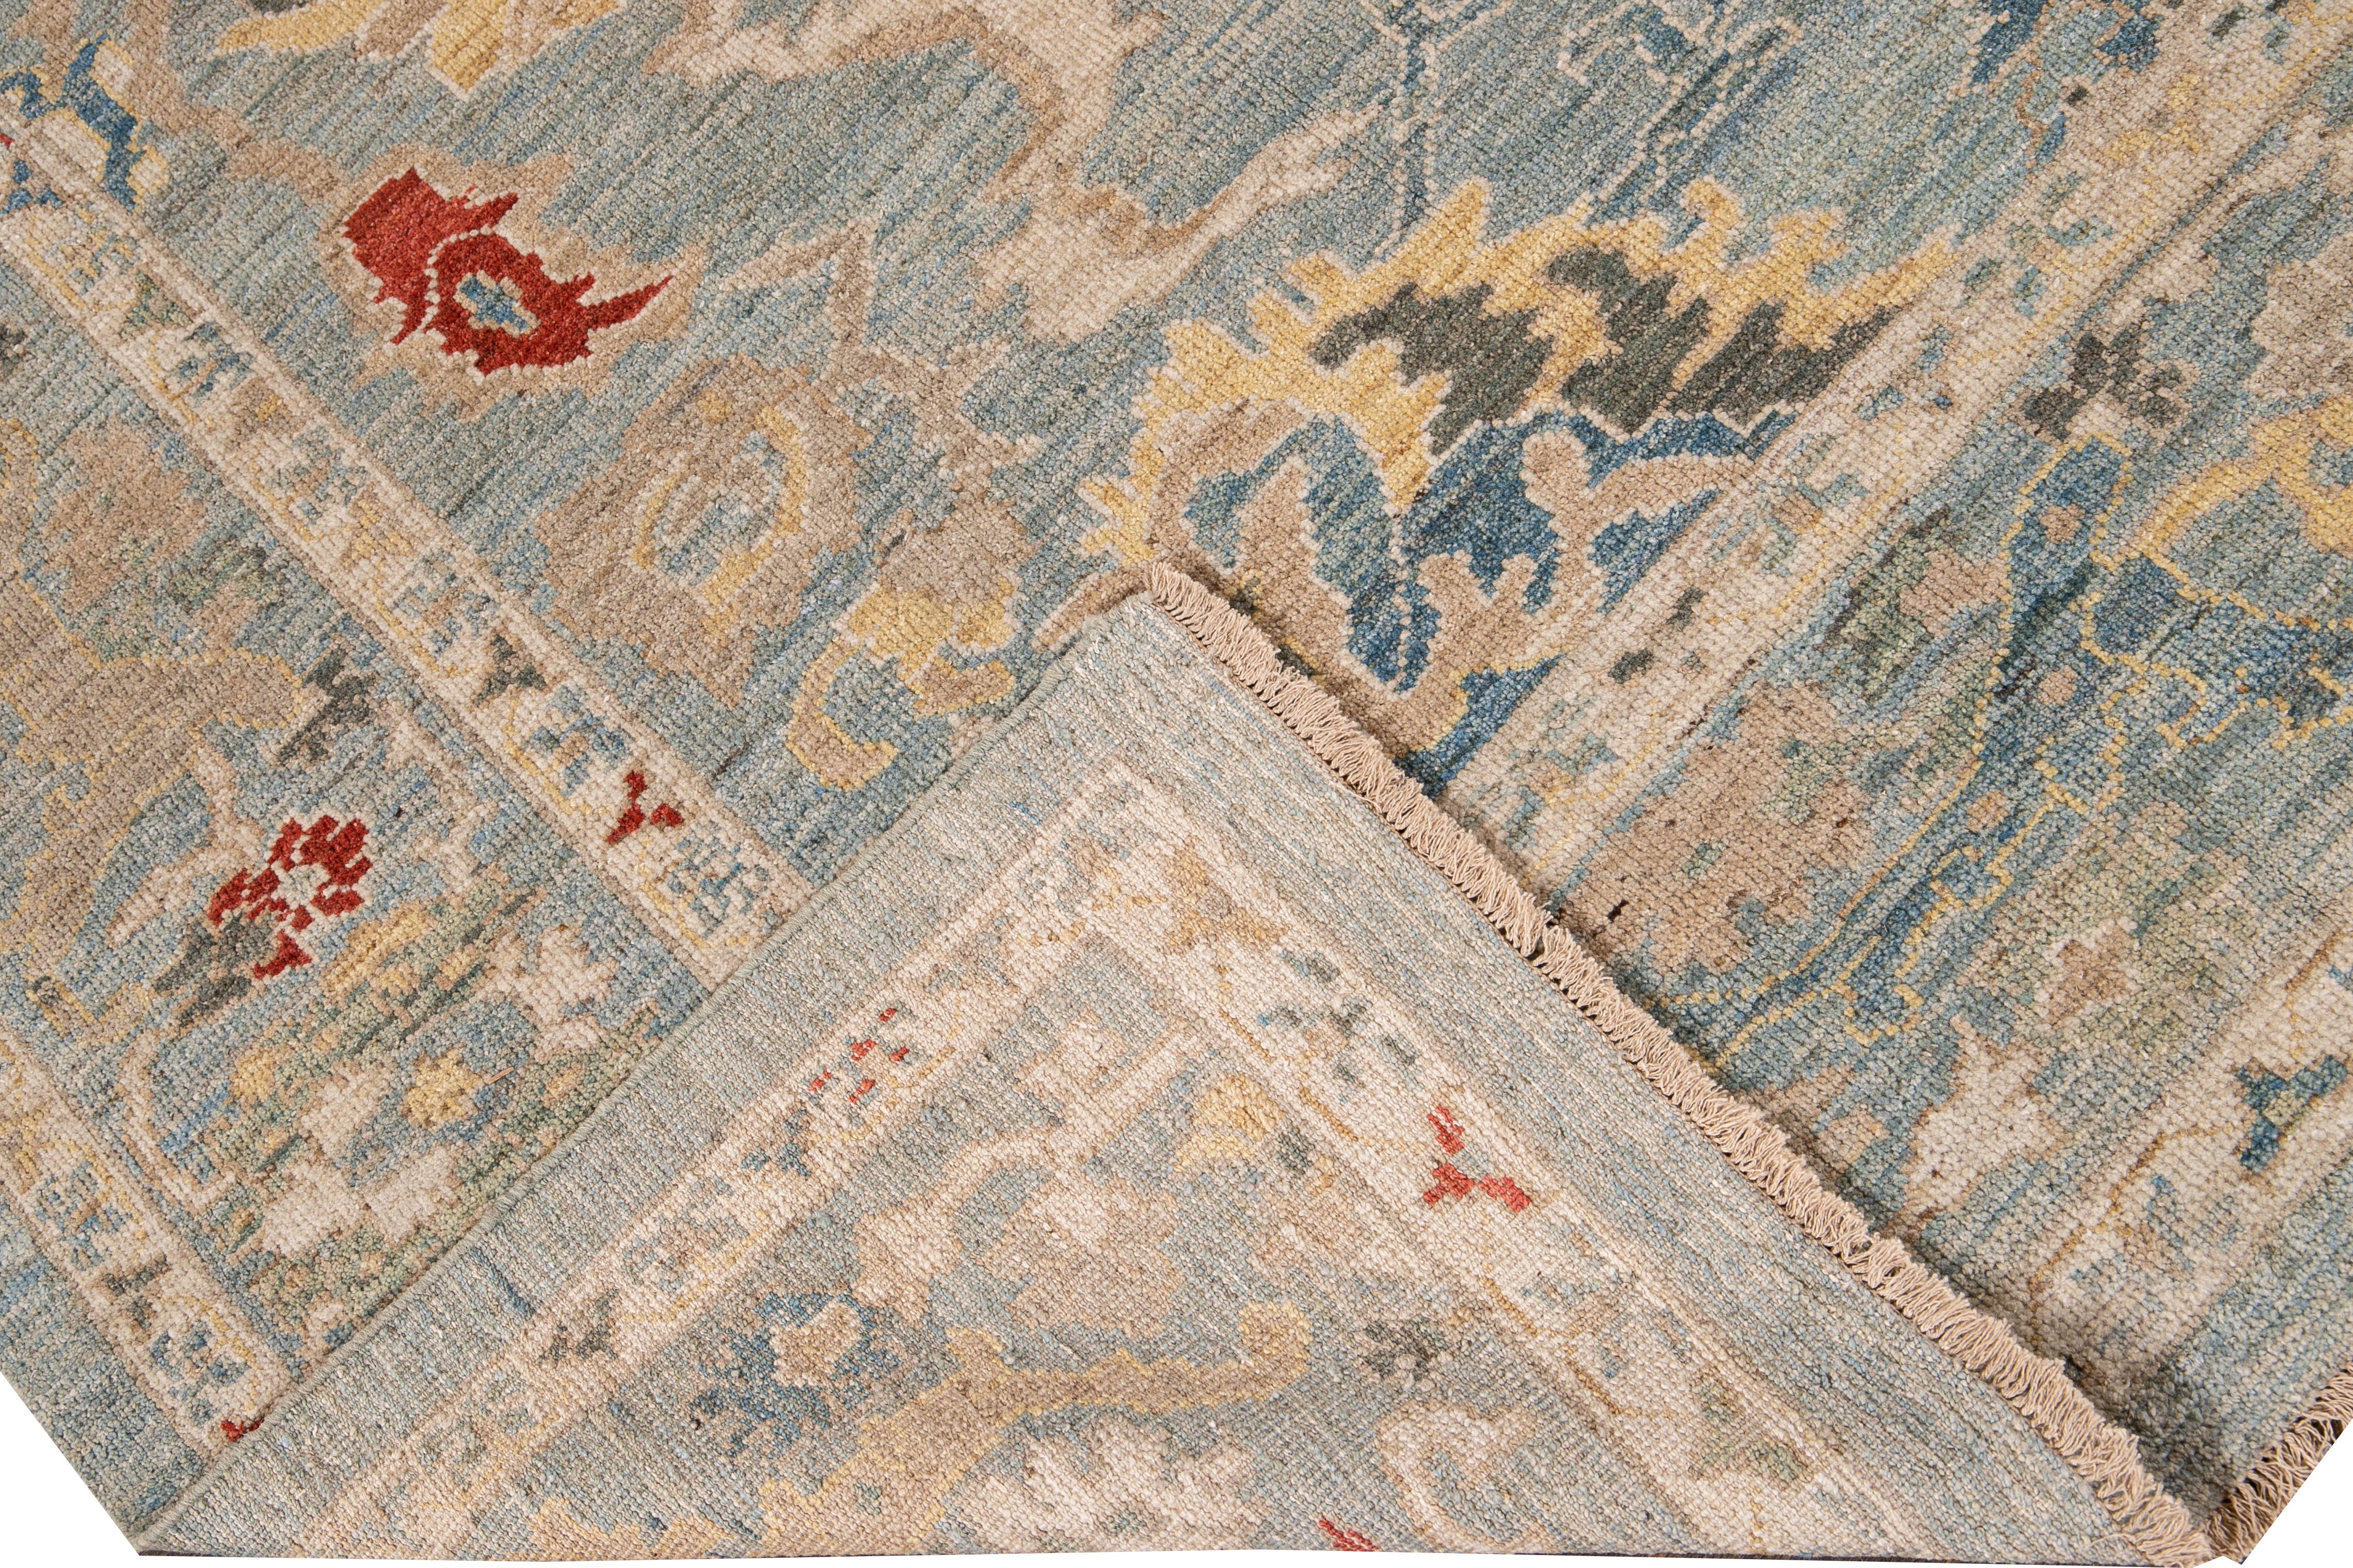 Schöner moderner, handgeknüpfter Sultanabad-Wollteppich mit blauem Feld. Dieser Sultanabad-Teppich hat einen blauen Rahmen und mehrfarbige Akzente in einem prächtigen, floralen Medaillon-Design.

Dieser Teppich misst: 8'4